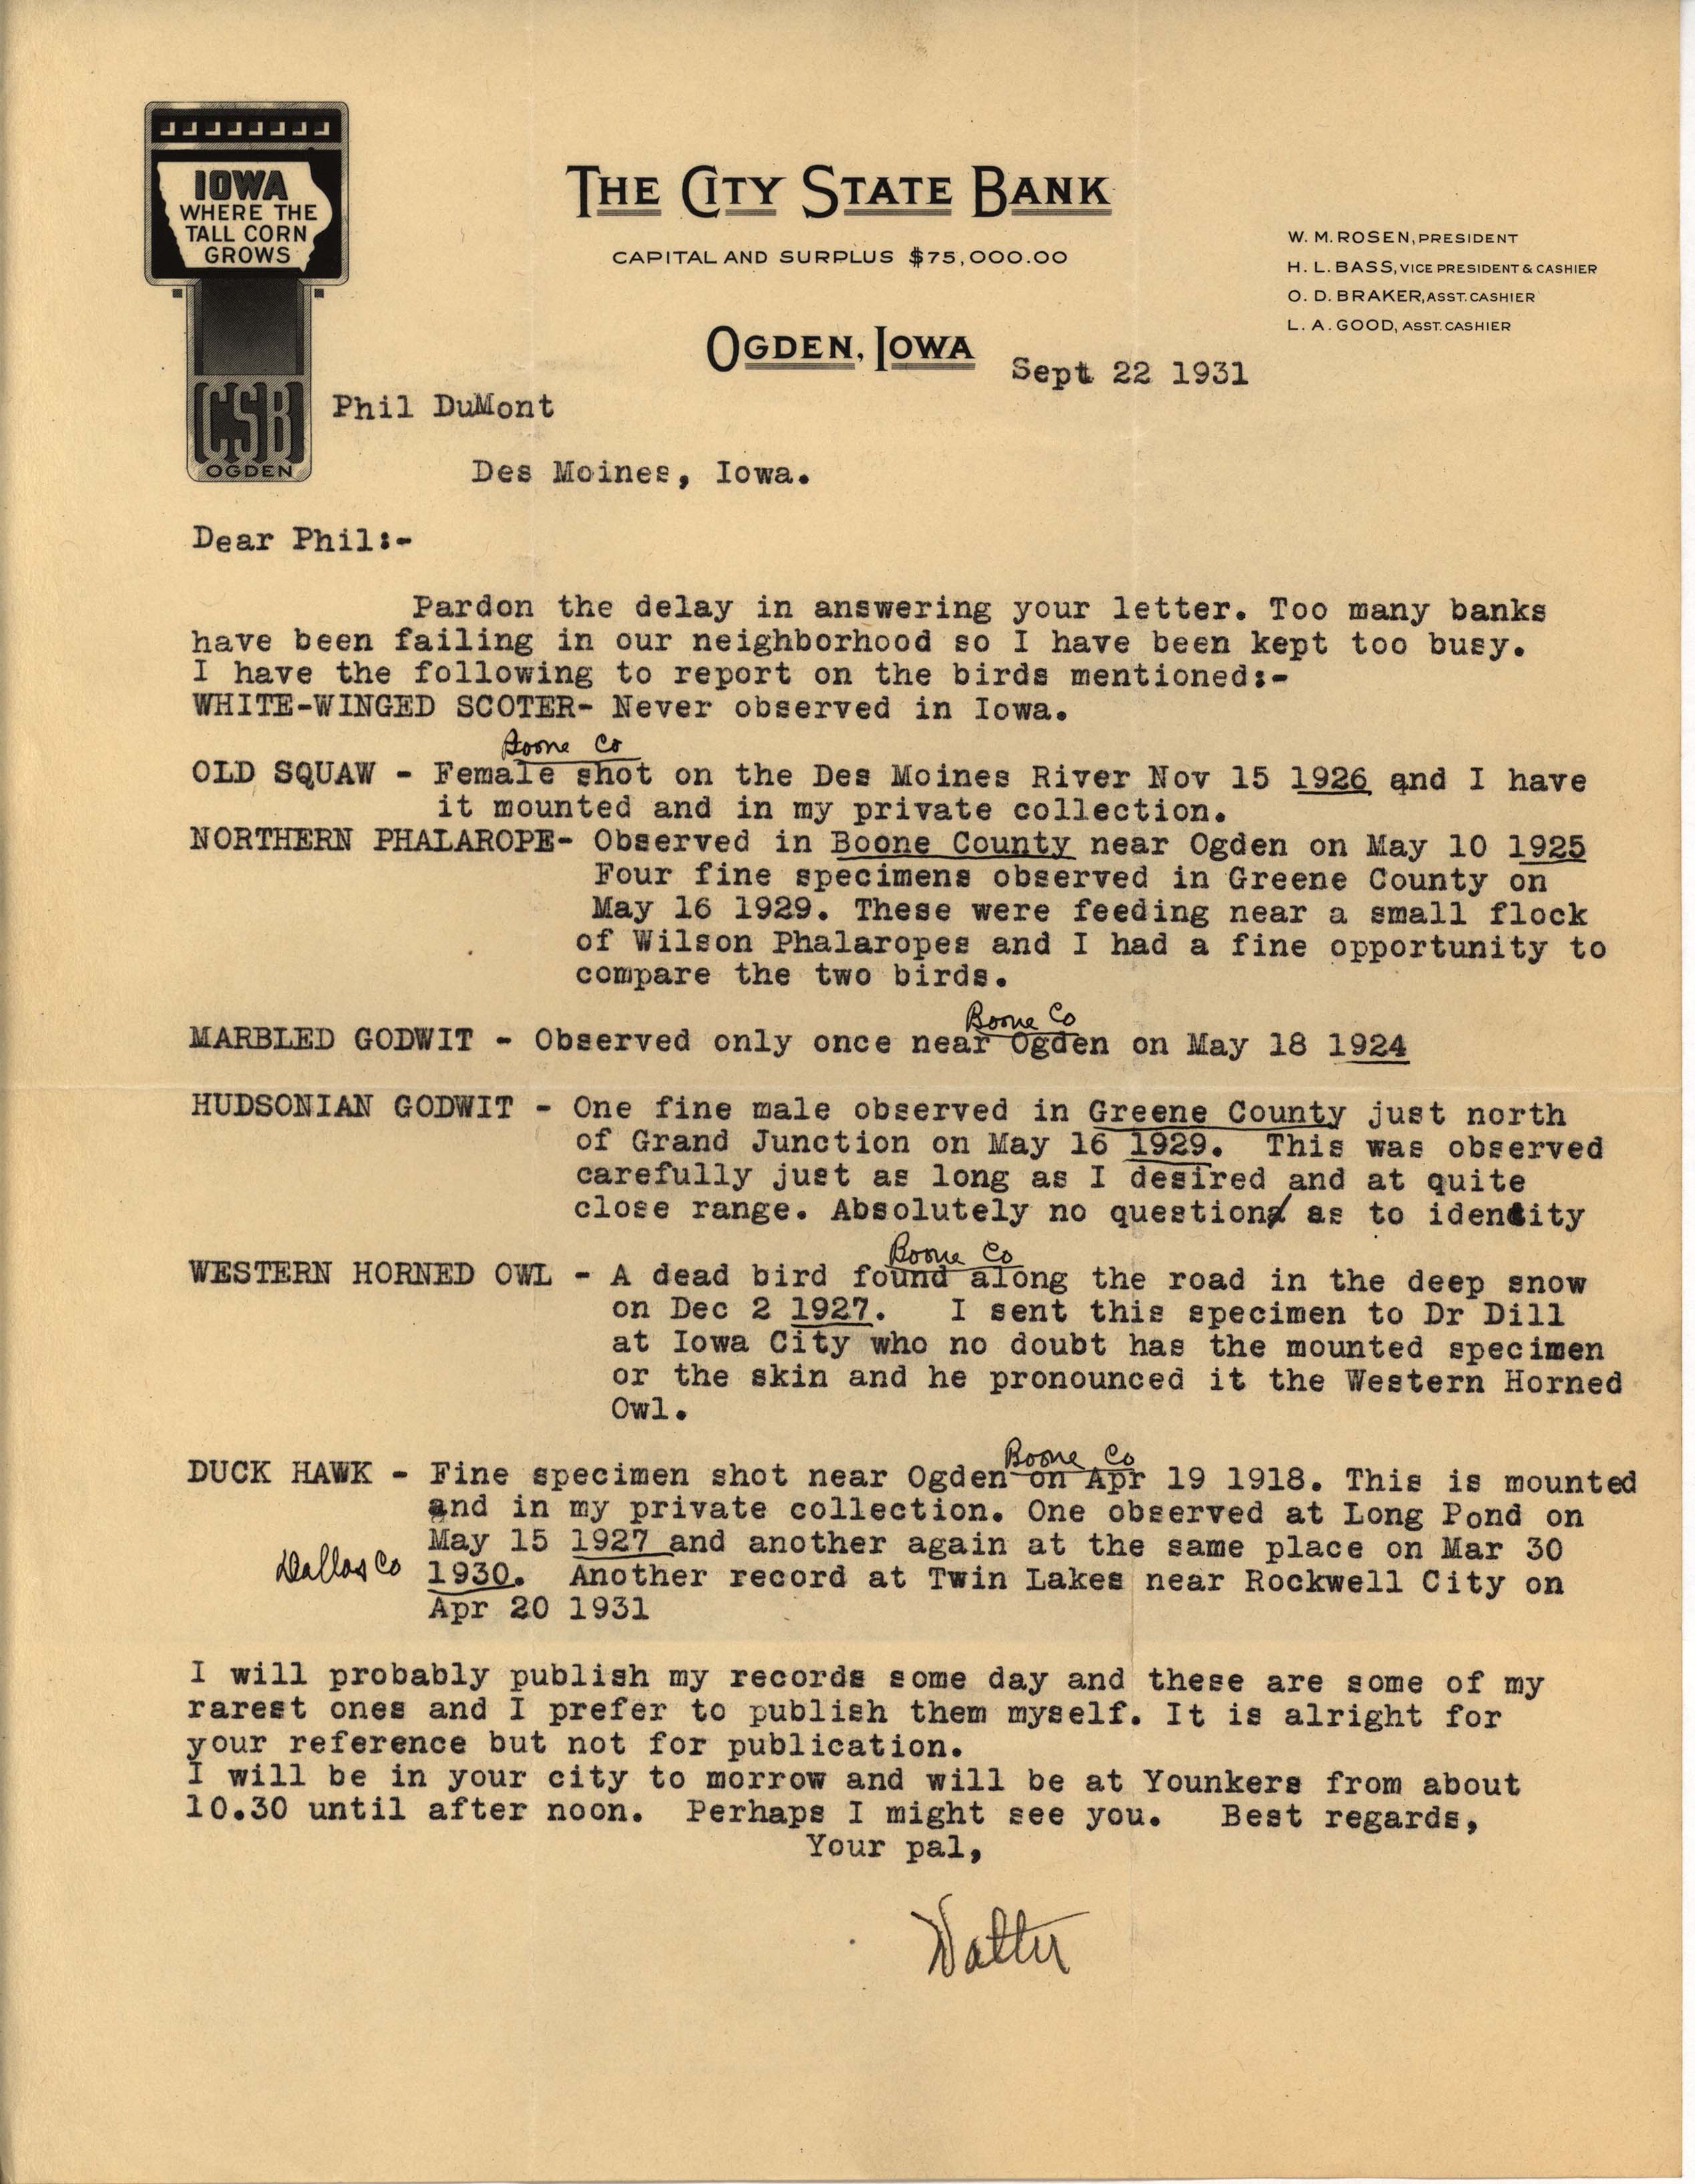 Walter Rosene letter to Philip DuMont regarding rare bird sightings, September 22, 1931